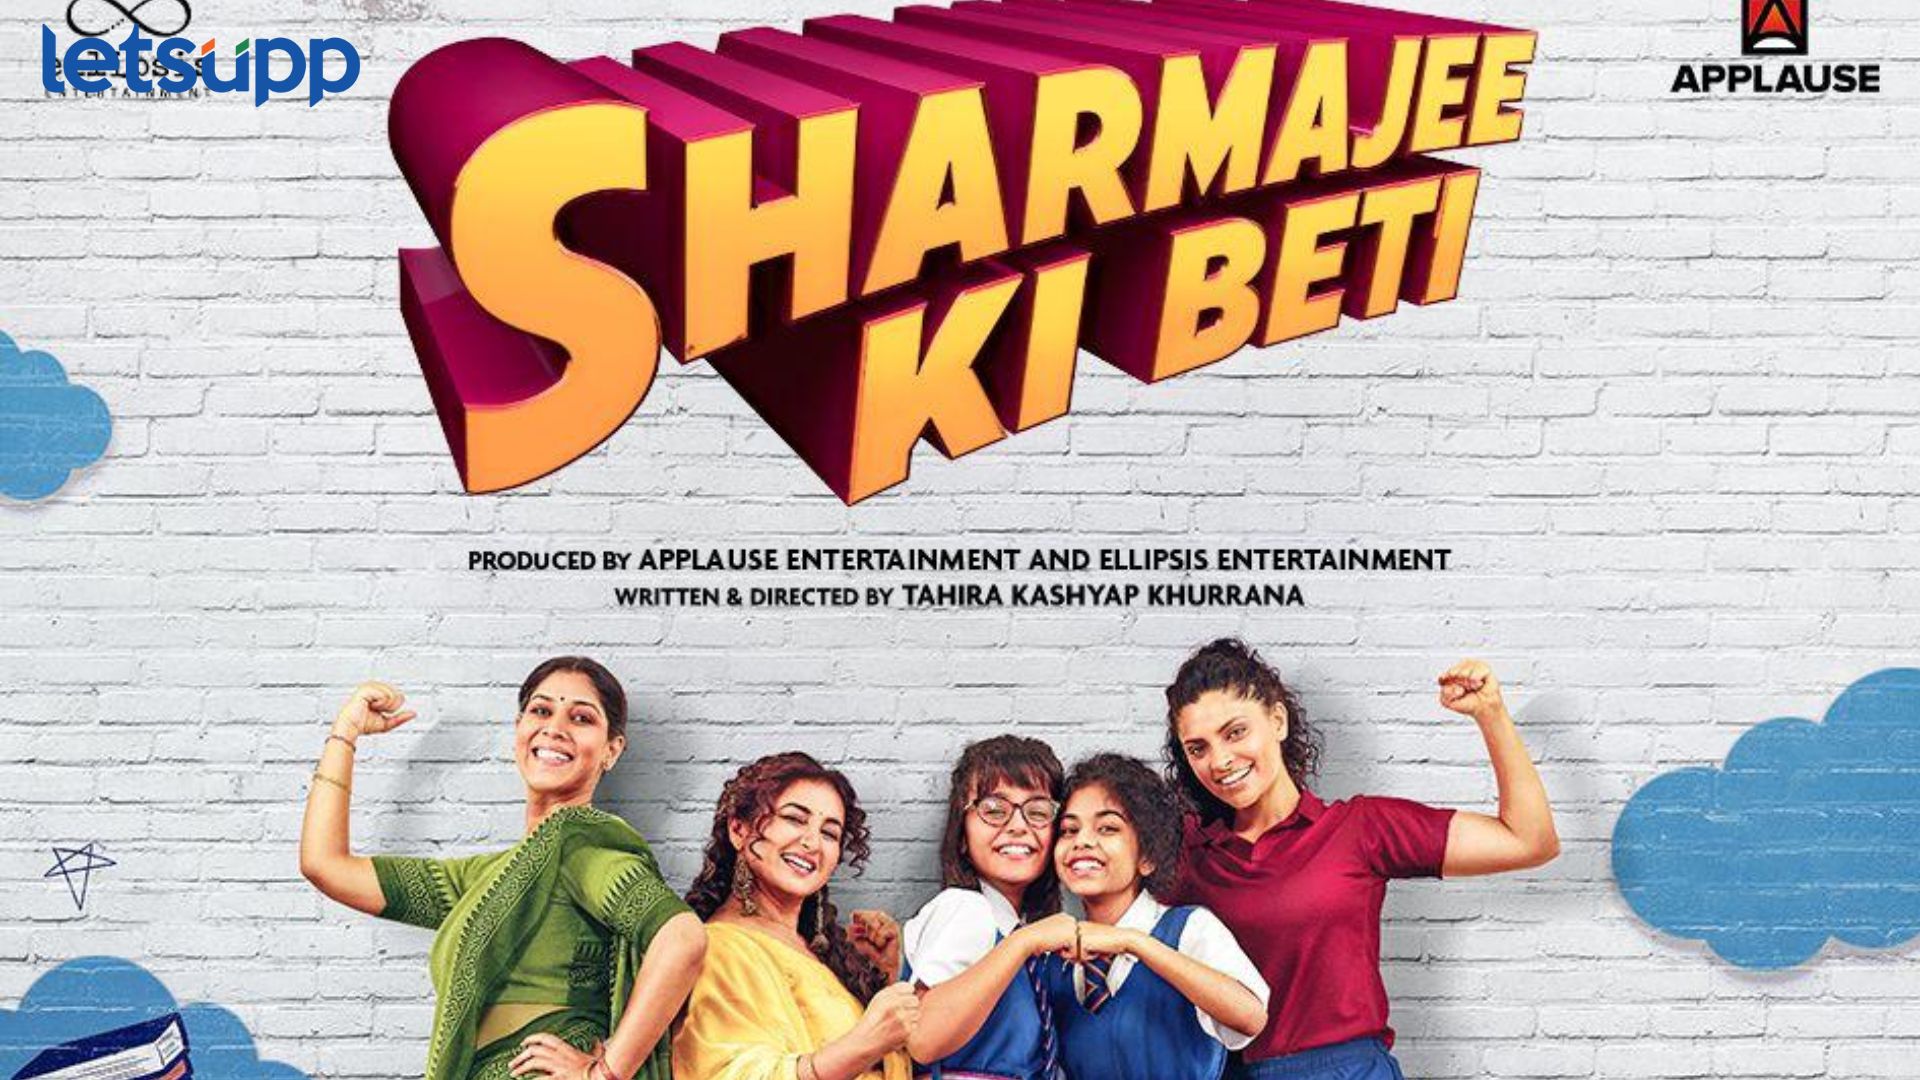 ‘Sharma jee Ki Beti’च्या प्रीमियरची घोषणा; ताहिरा कश्यप खुराना करणार दिग्दर्शनात पदार्पण